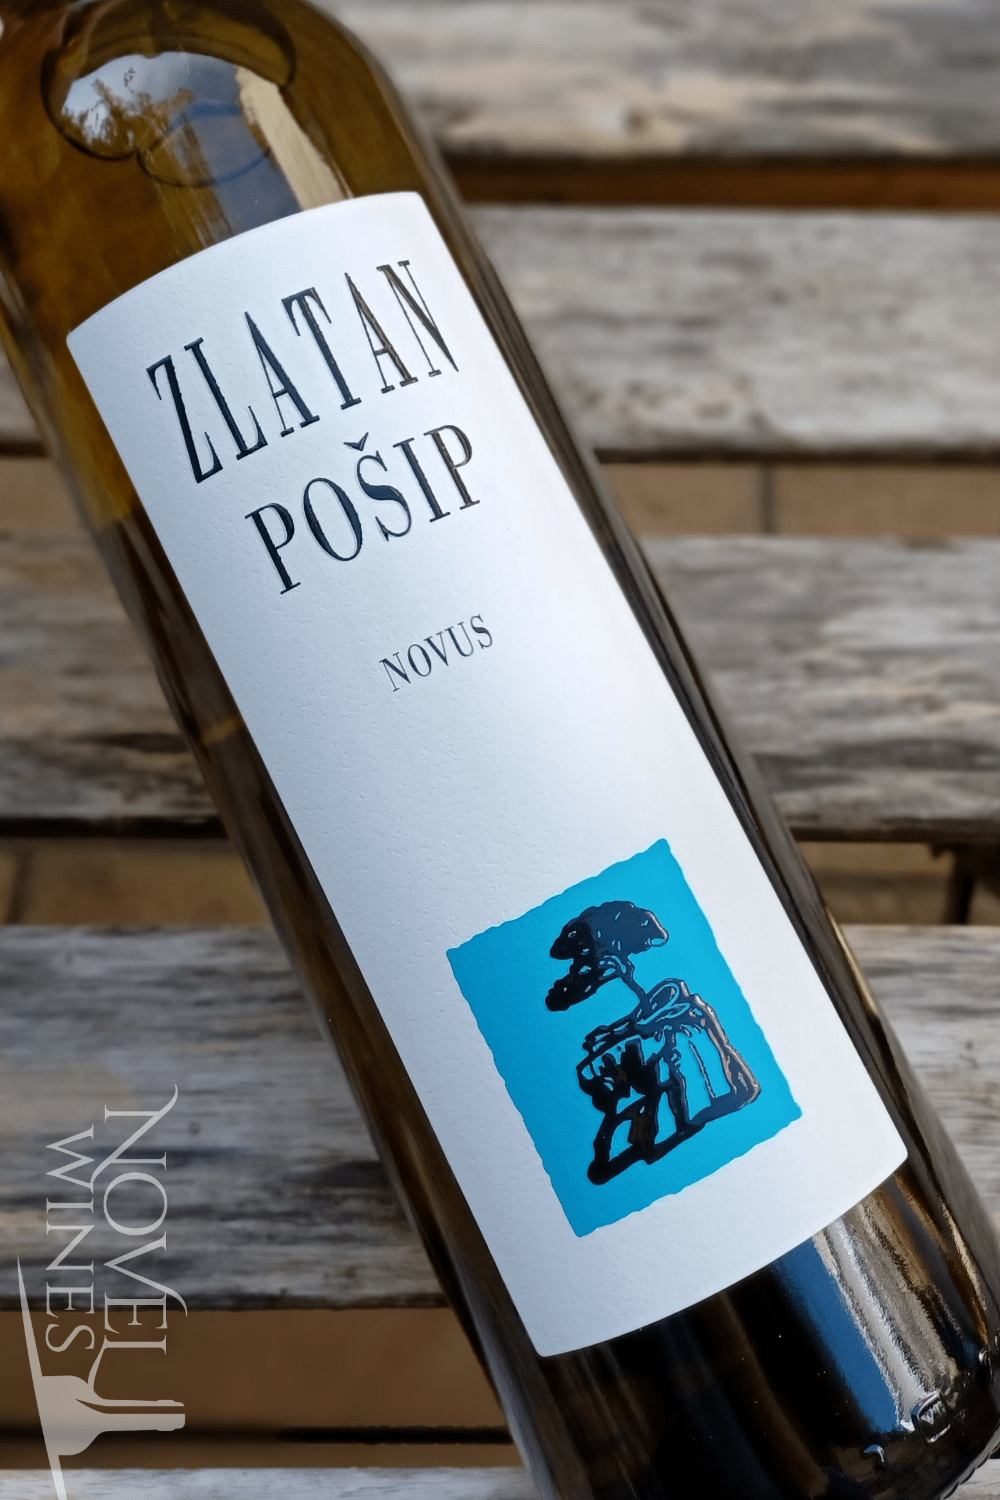 Novel Wines Zlatan Otok Posip Novus 2019, Croatia